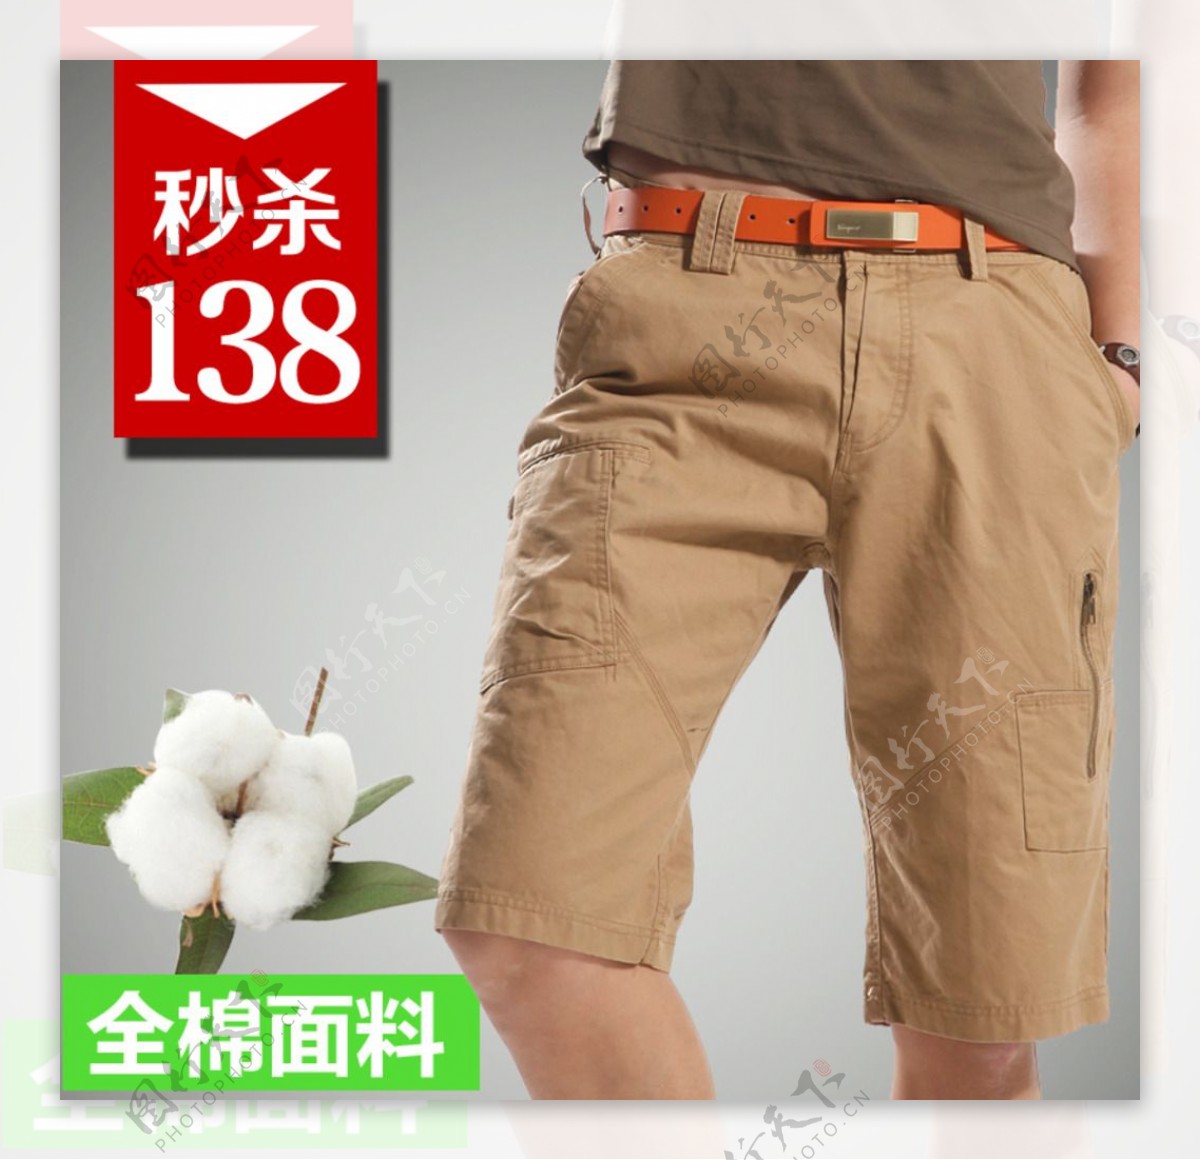 男士短裤展示促销标签